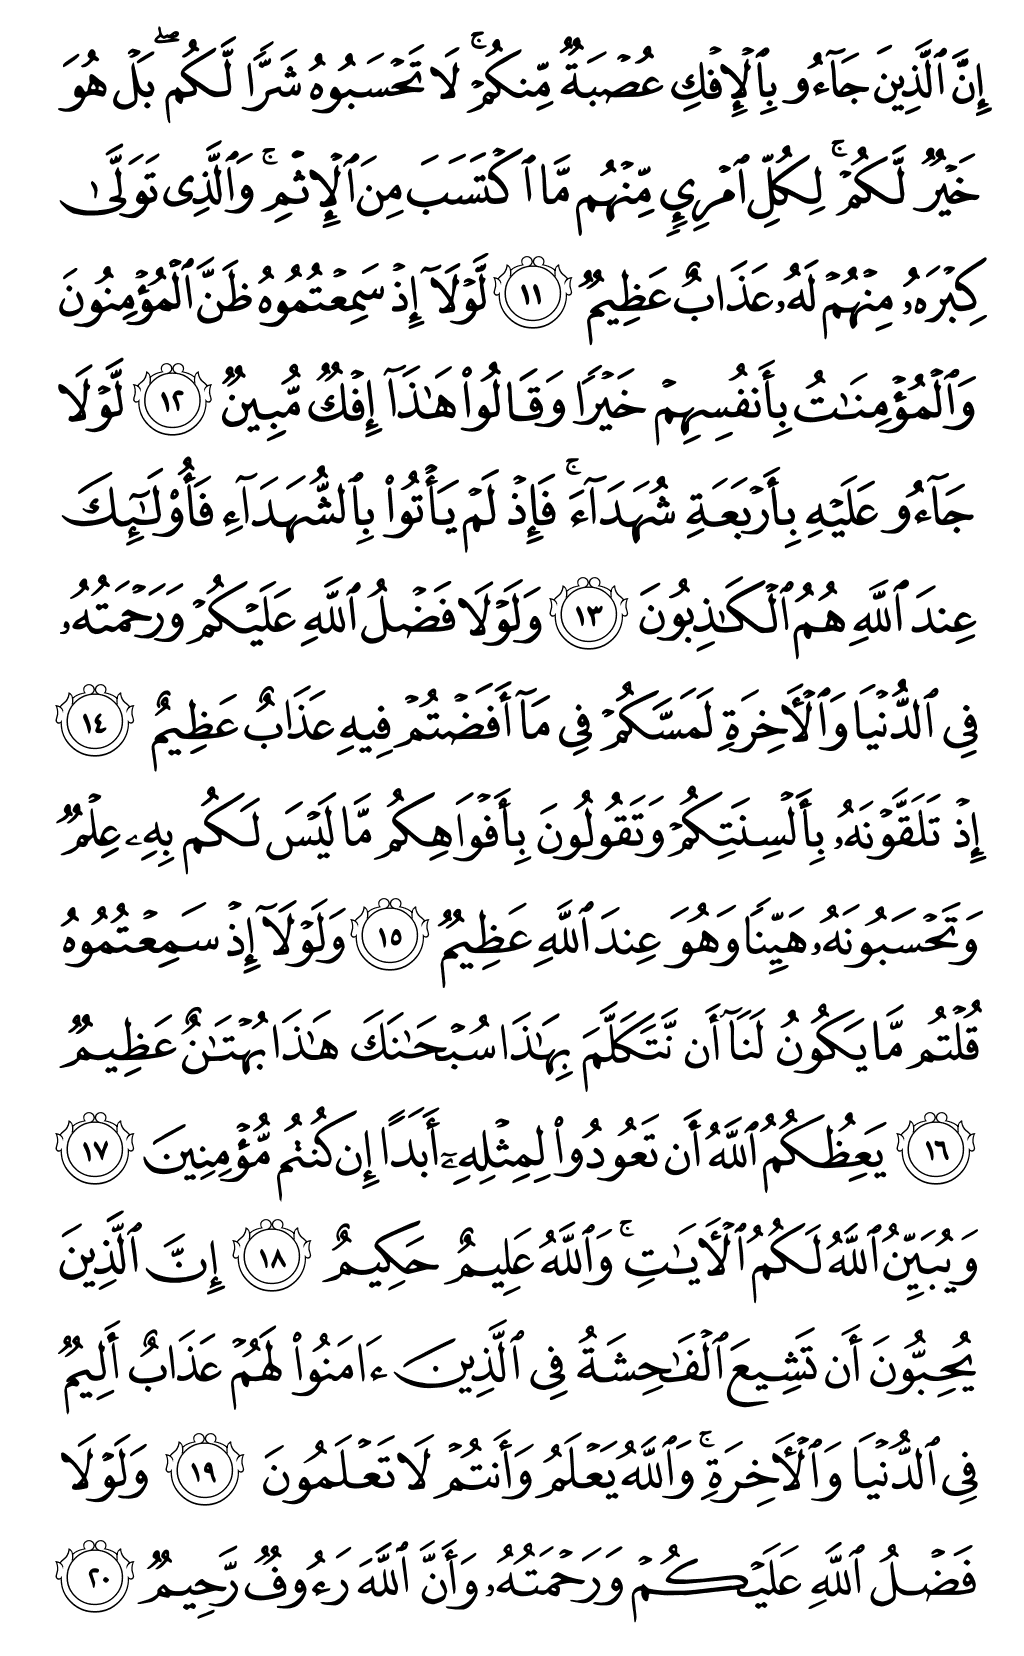 الصفحة رقم 351 من القرآن الكريم